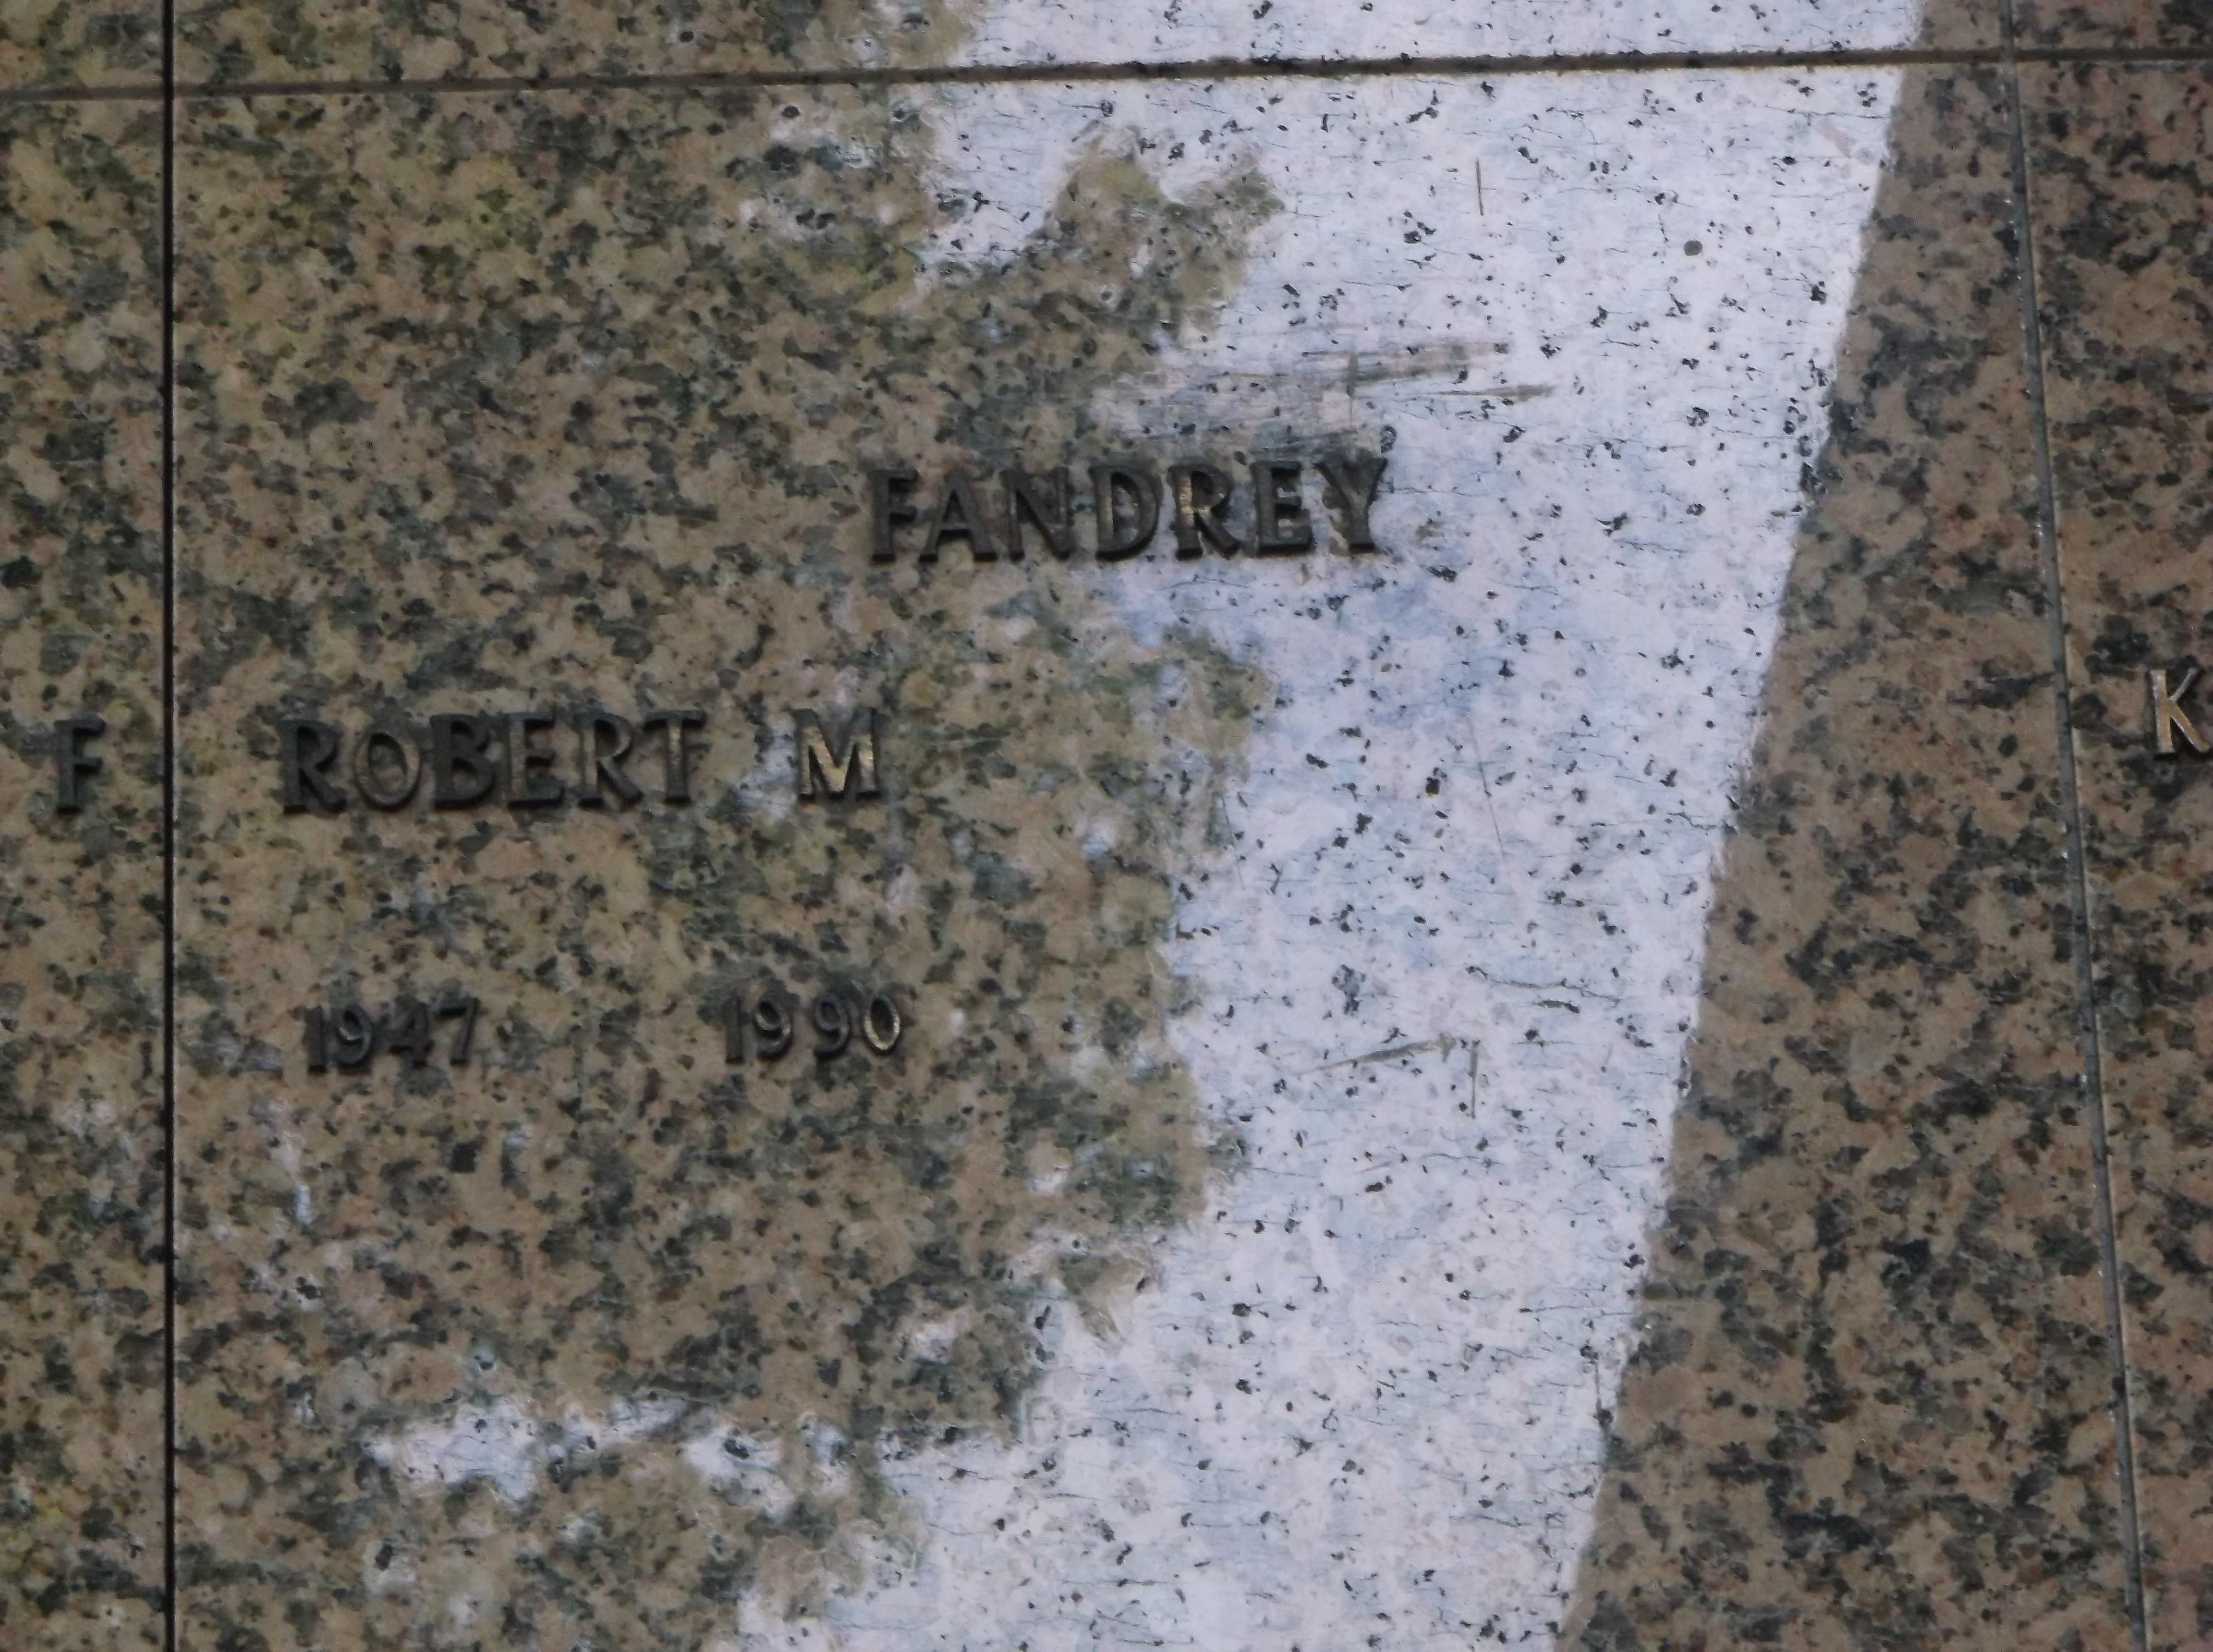 Robert M Fandrey